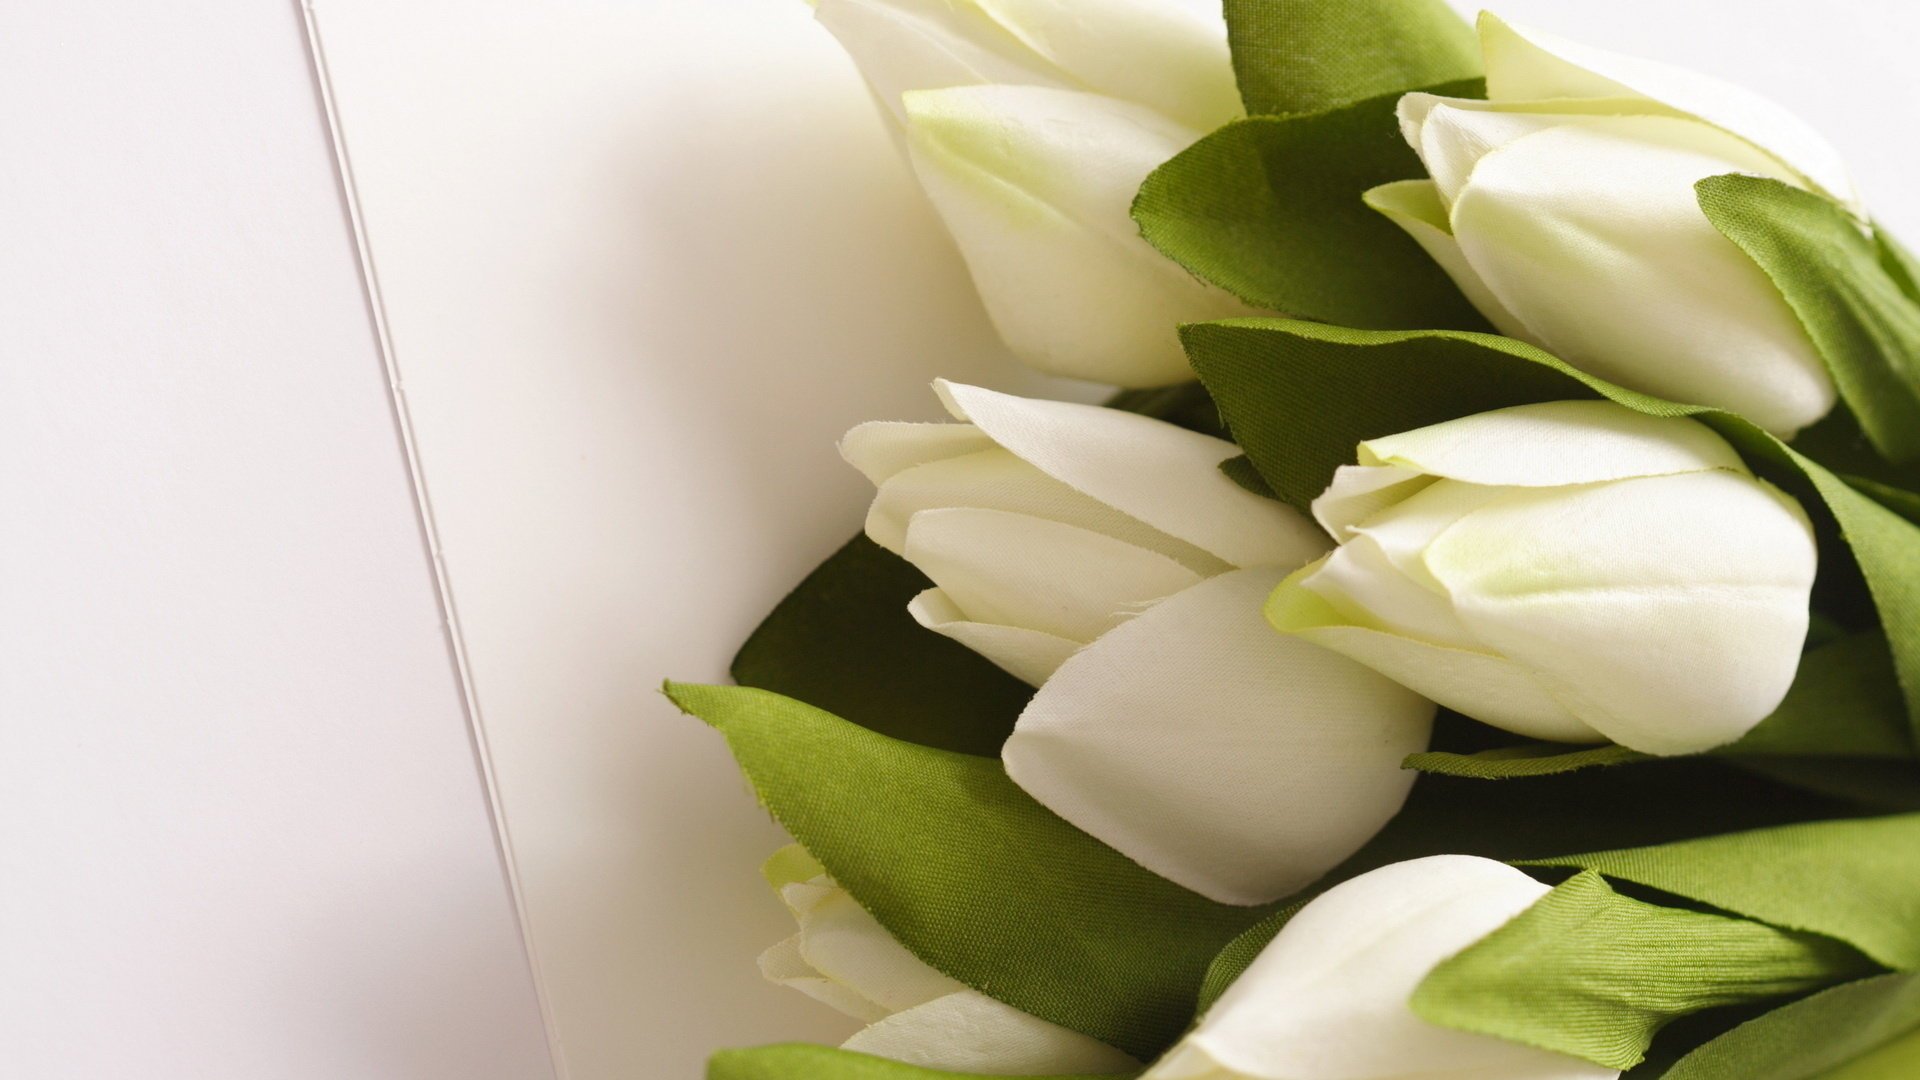 Букет белых тюльпанов на белом фоне